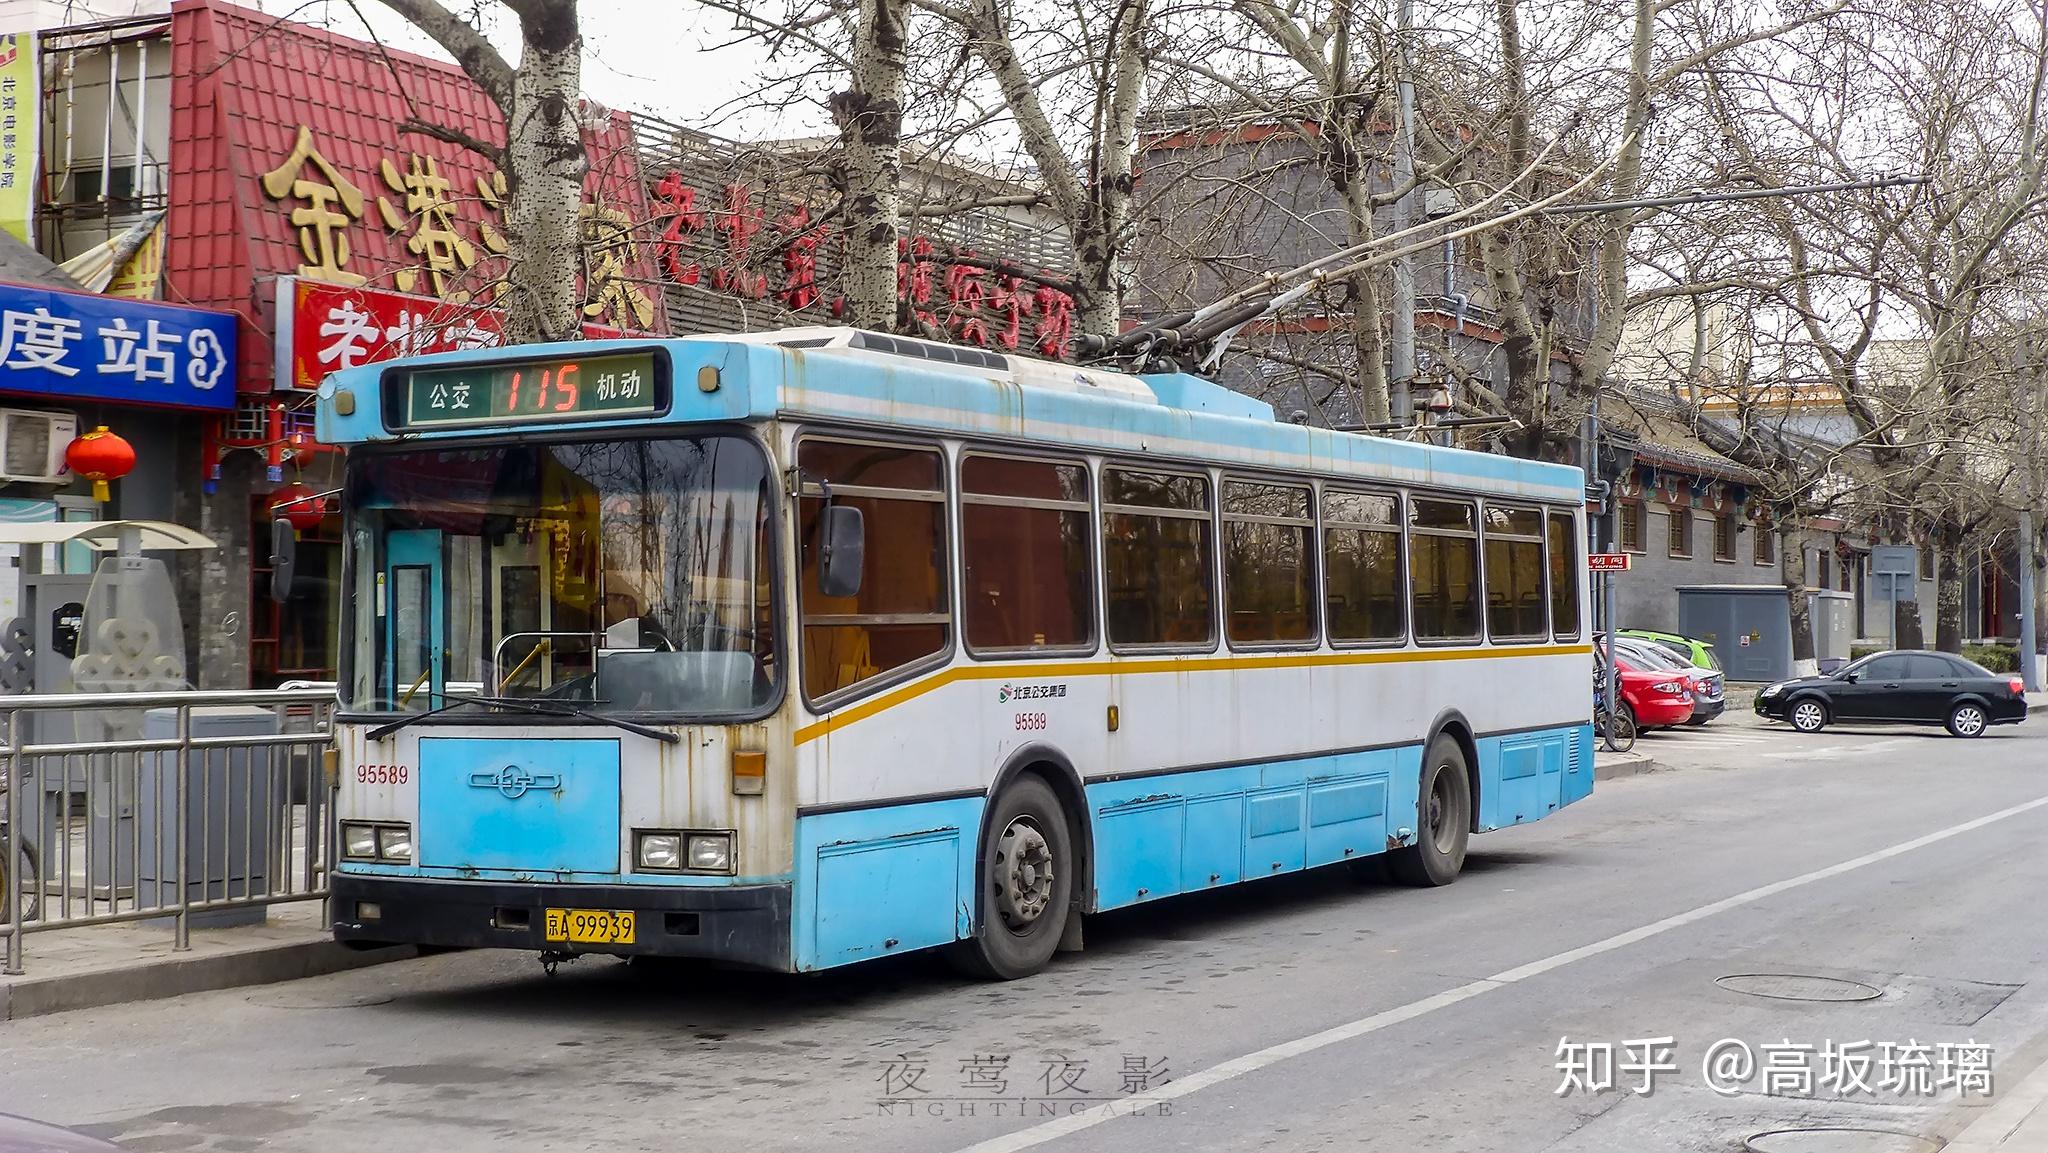 2002年,北京电车制配厂制作了两台bjd